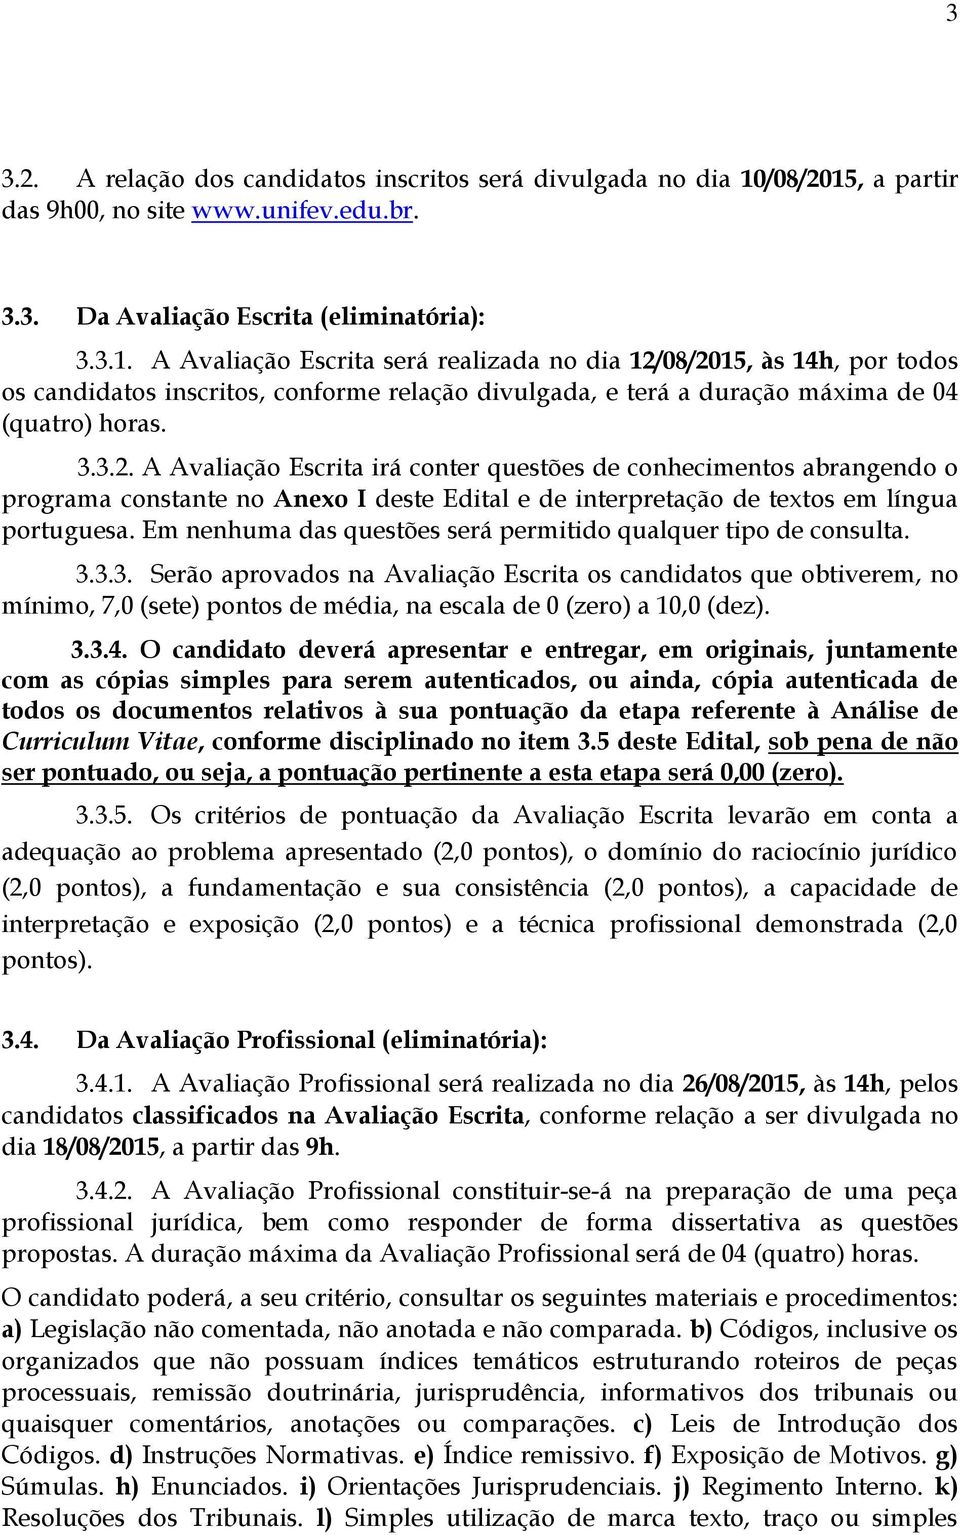 3.3.2. A Avaliação Escrita irá conter questões de conhecimentos abrangendo o programa constante no Anexo I deste Edital e de interpretação de textos em língua portuguesa.